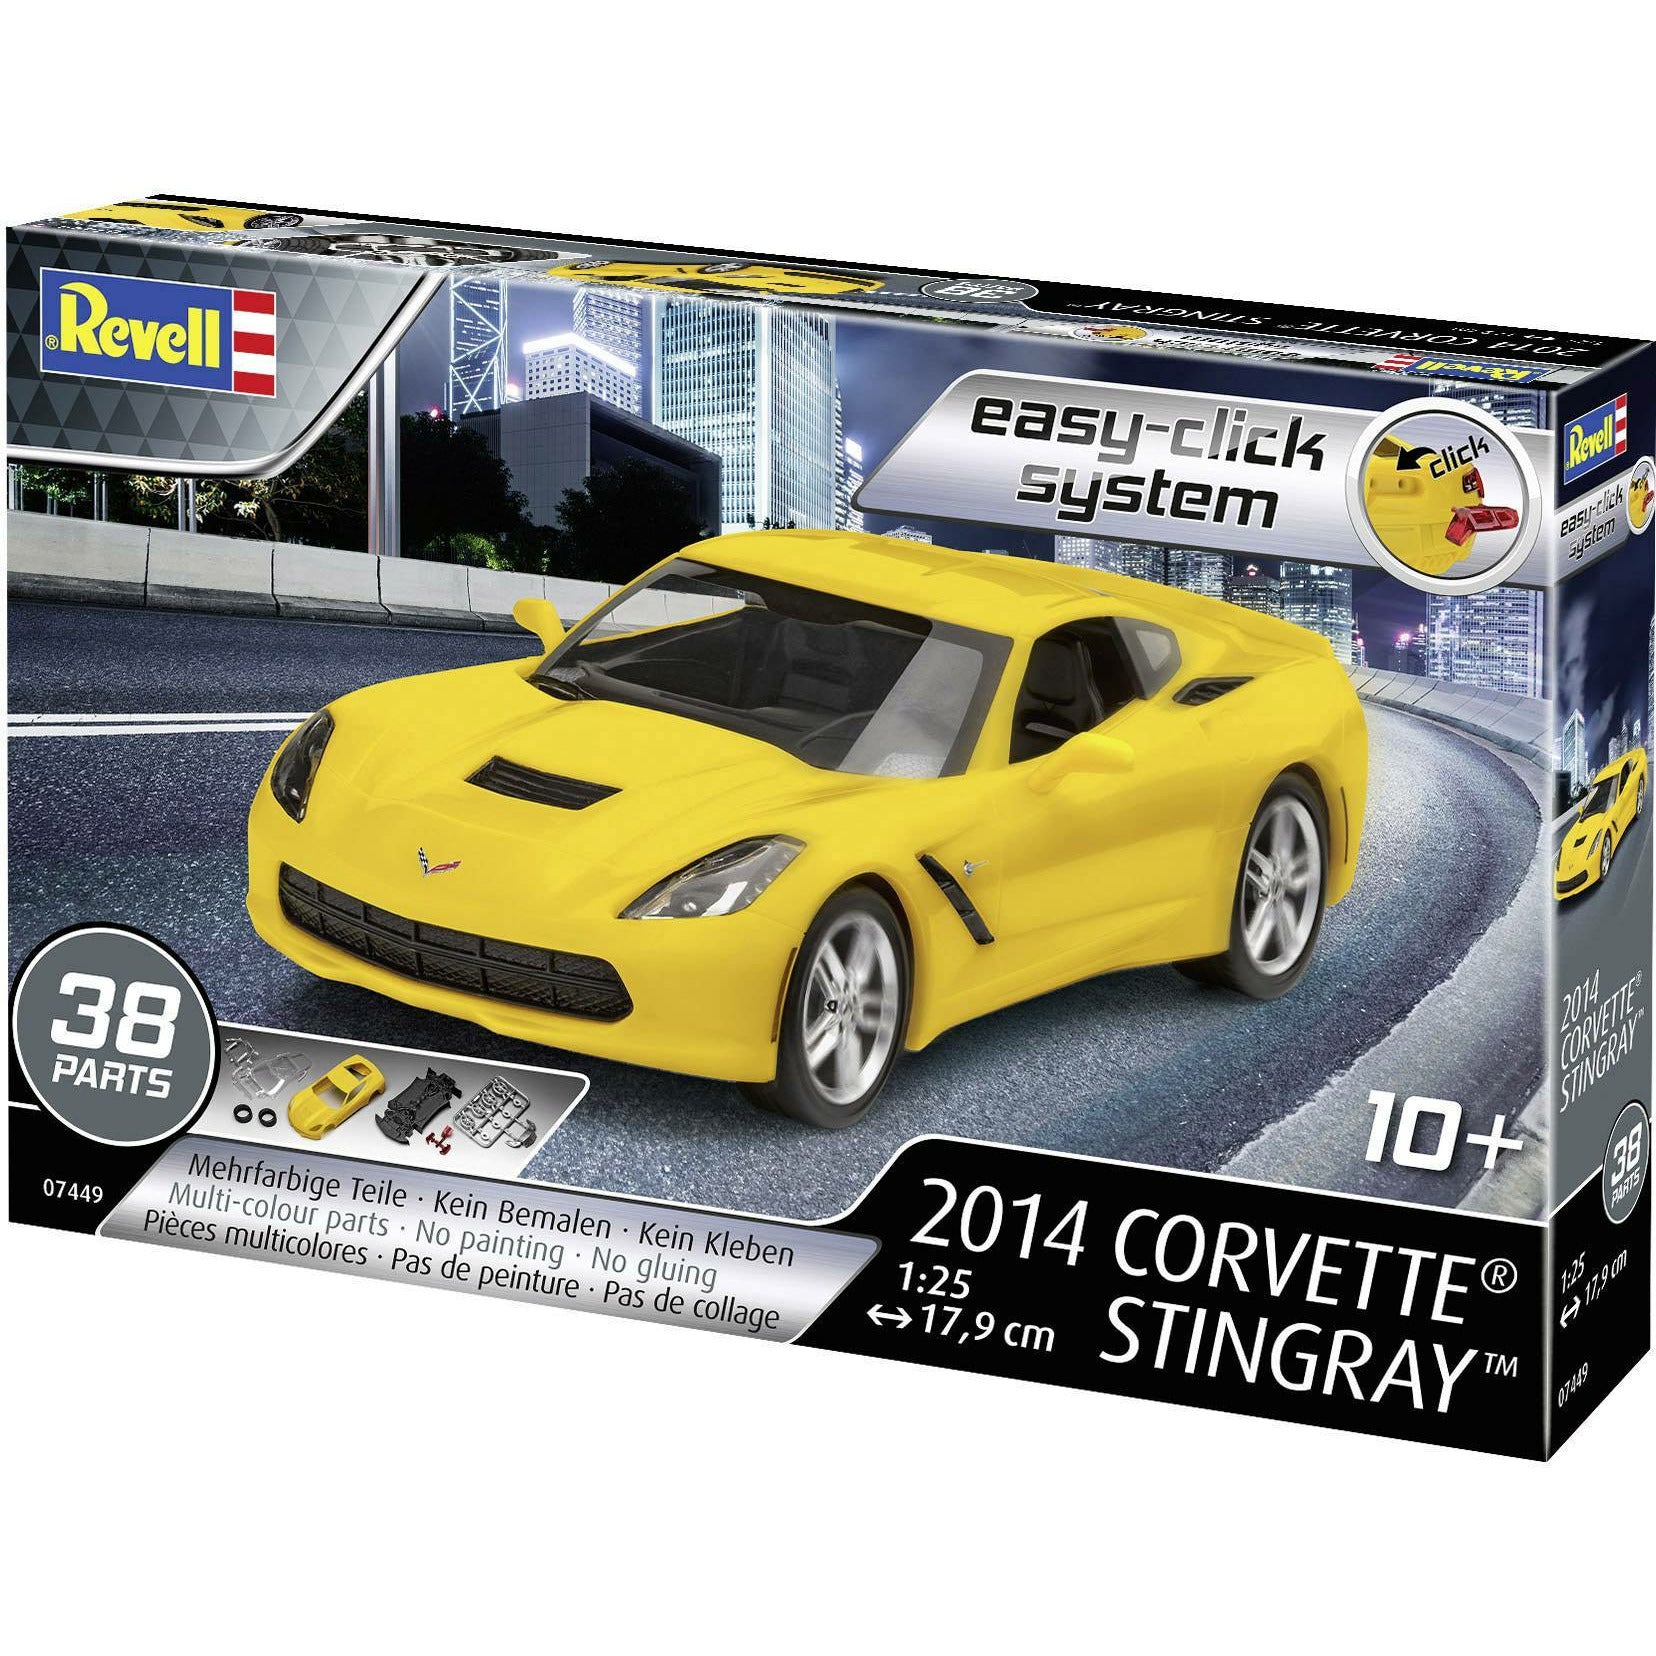 2014 Corvette Stingray 1/25 Snap-Together Model Car Kit #07449 by Revell